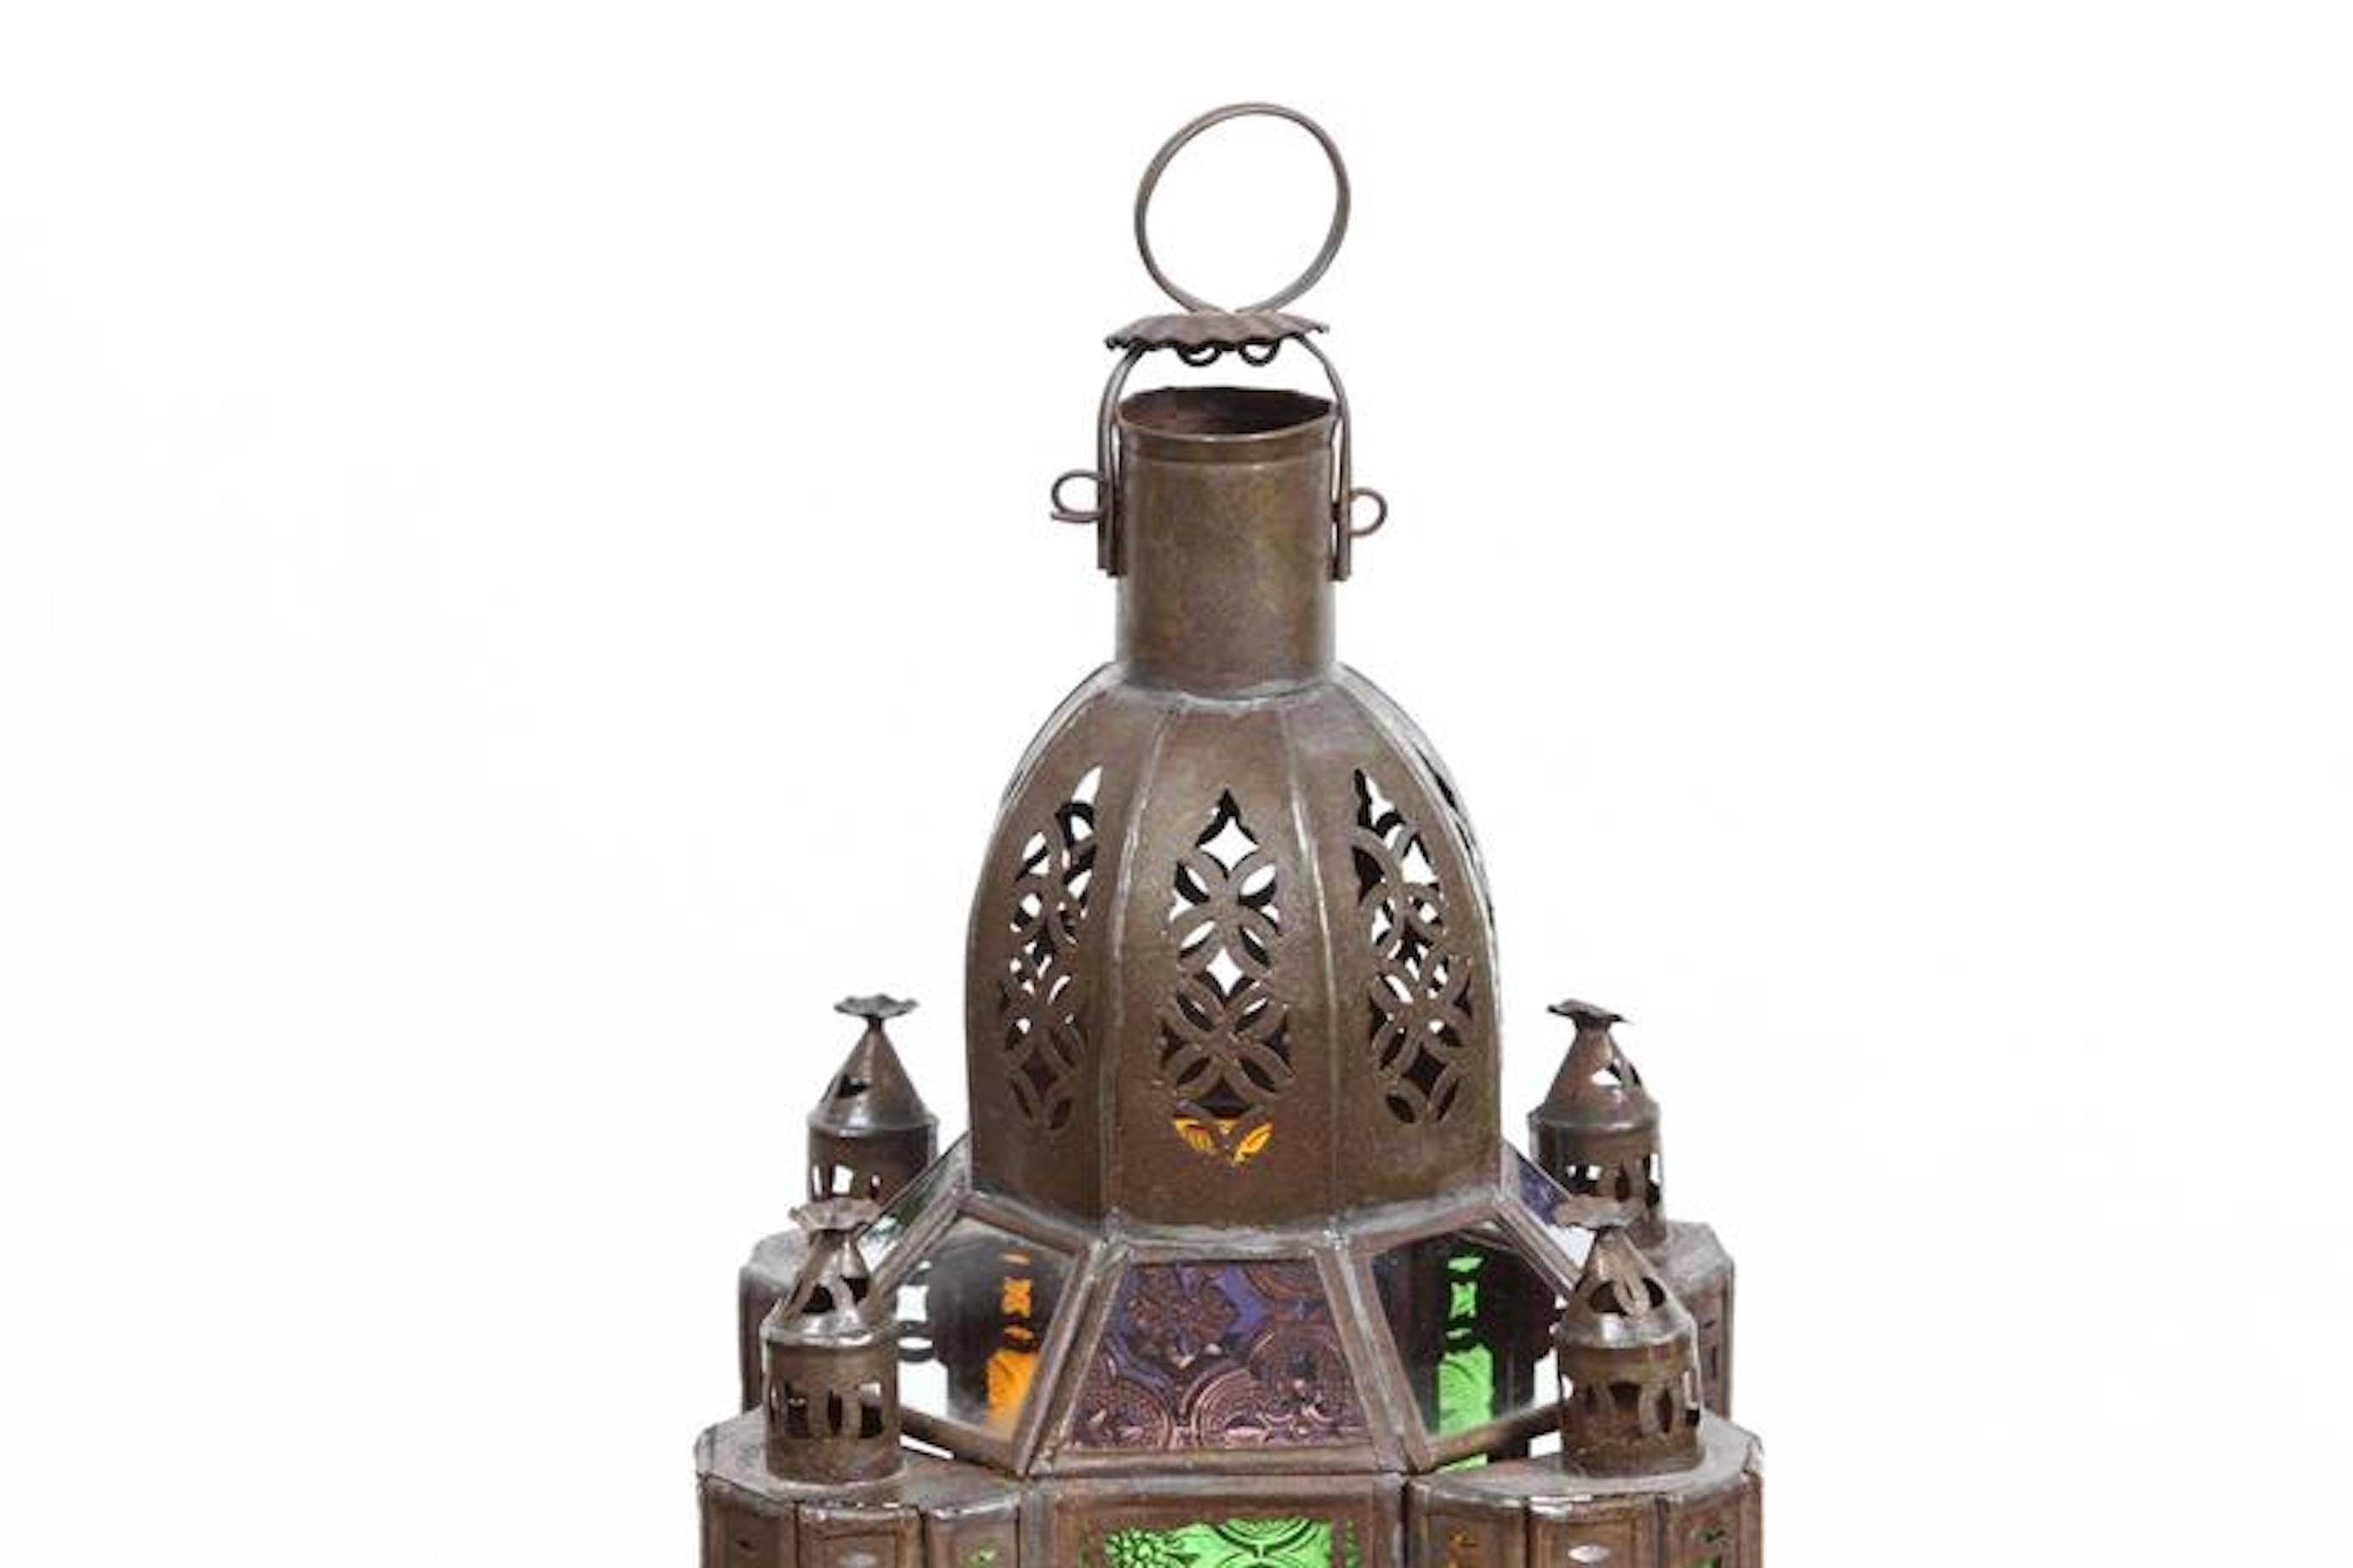 Vieille lanterne marocaine mauresque en métal et verre
Petite lanterne marocaine en verre ou pendentif mauresque fabriqué à la main.
Verre moulé multicolore en vert, lavande, bleu et transparent.
Lampe bougie hurricane faite à la main à Marrakech,